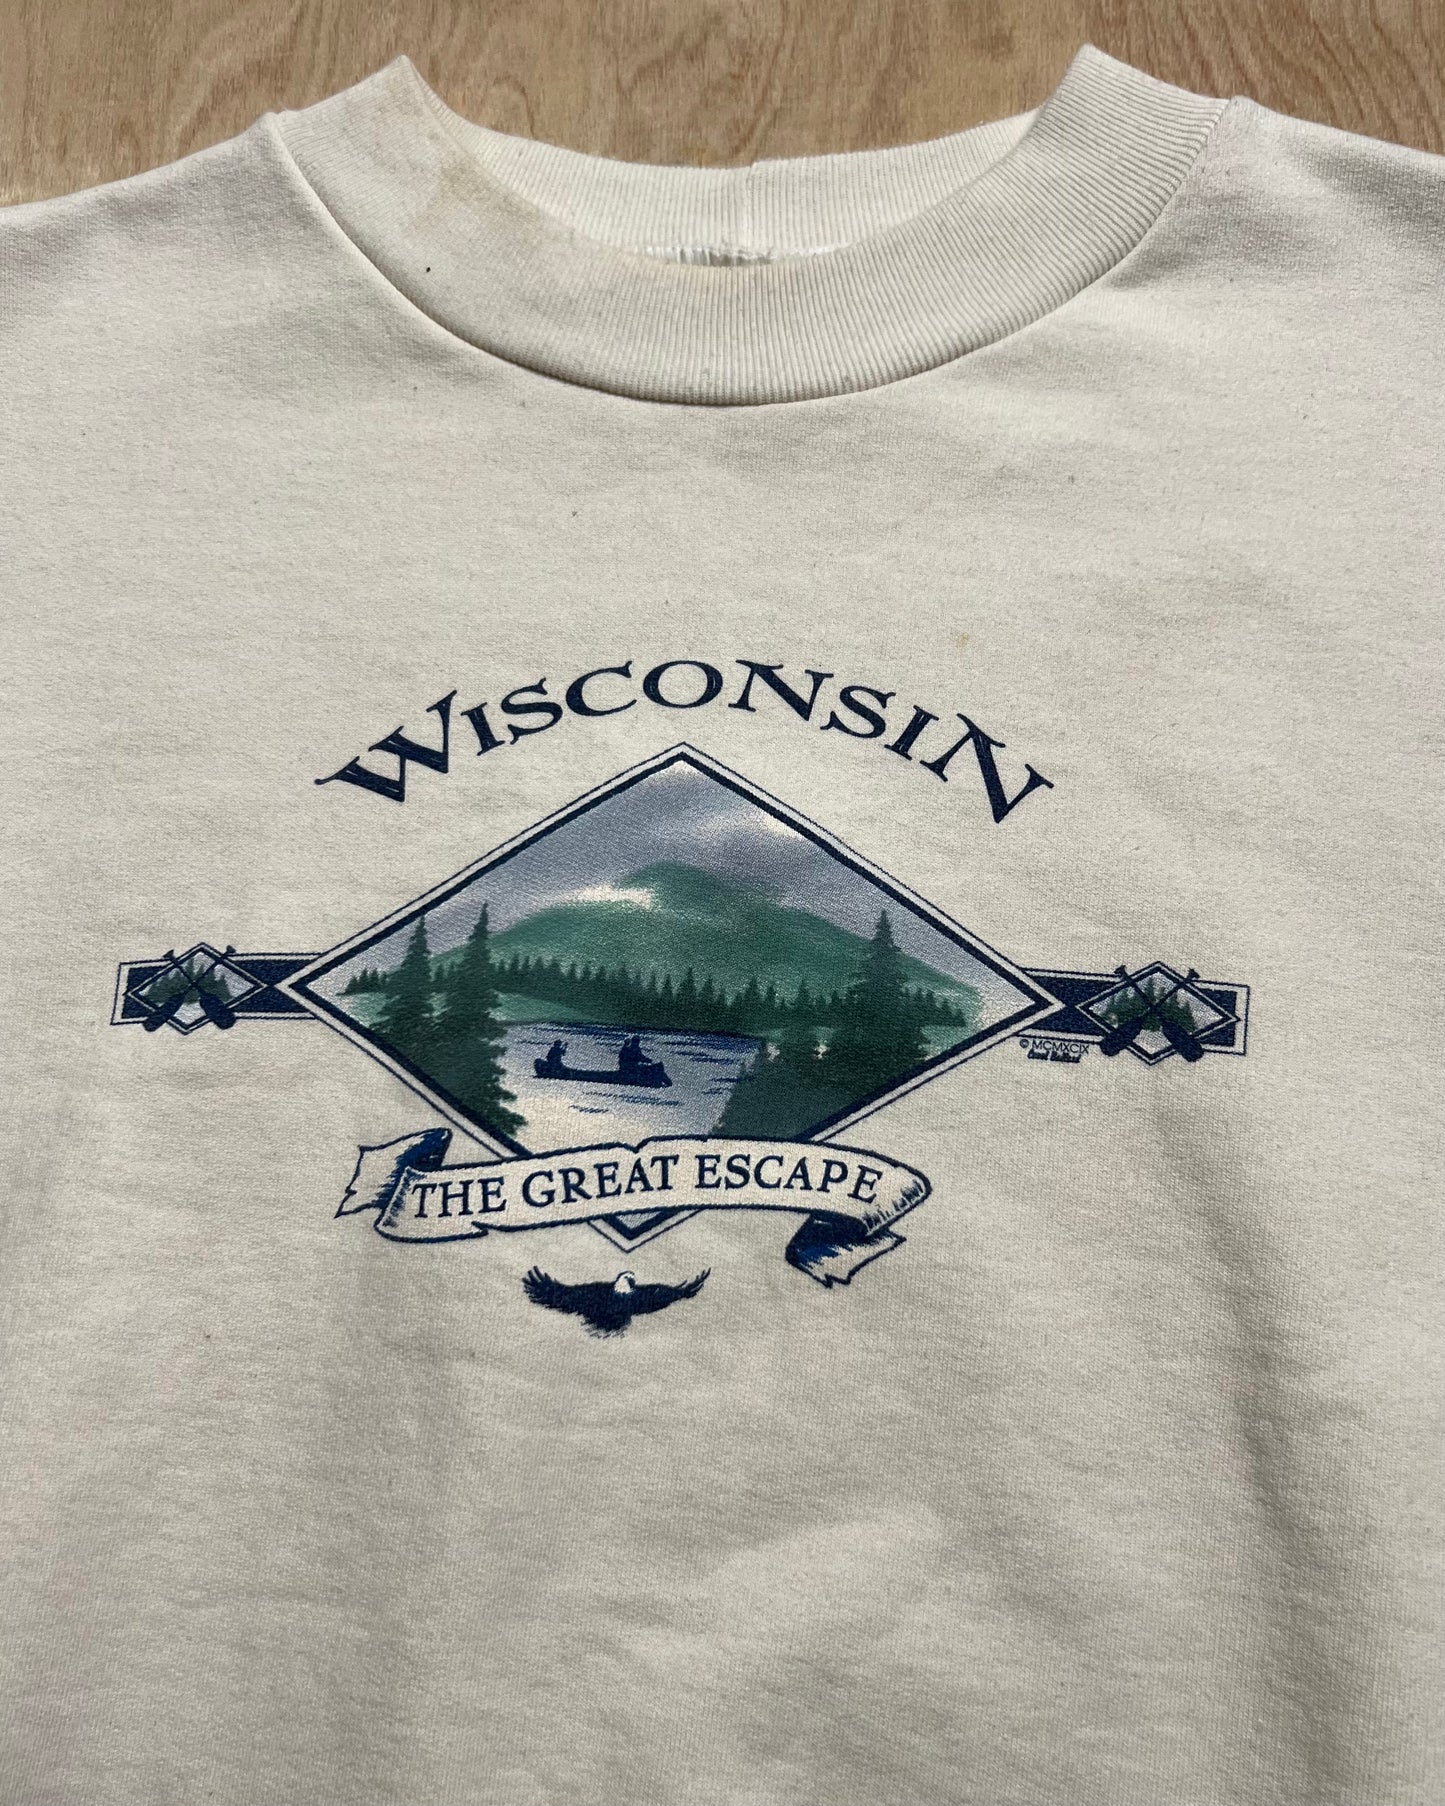 Vintage Wisconsin "The Great Escape" Crewneck